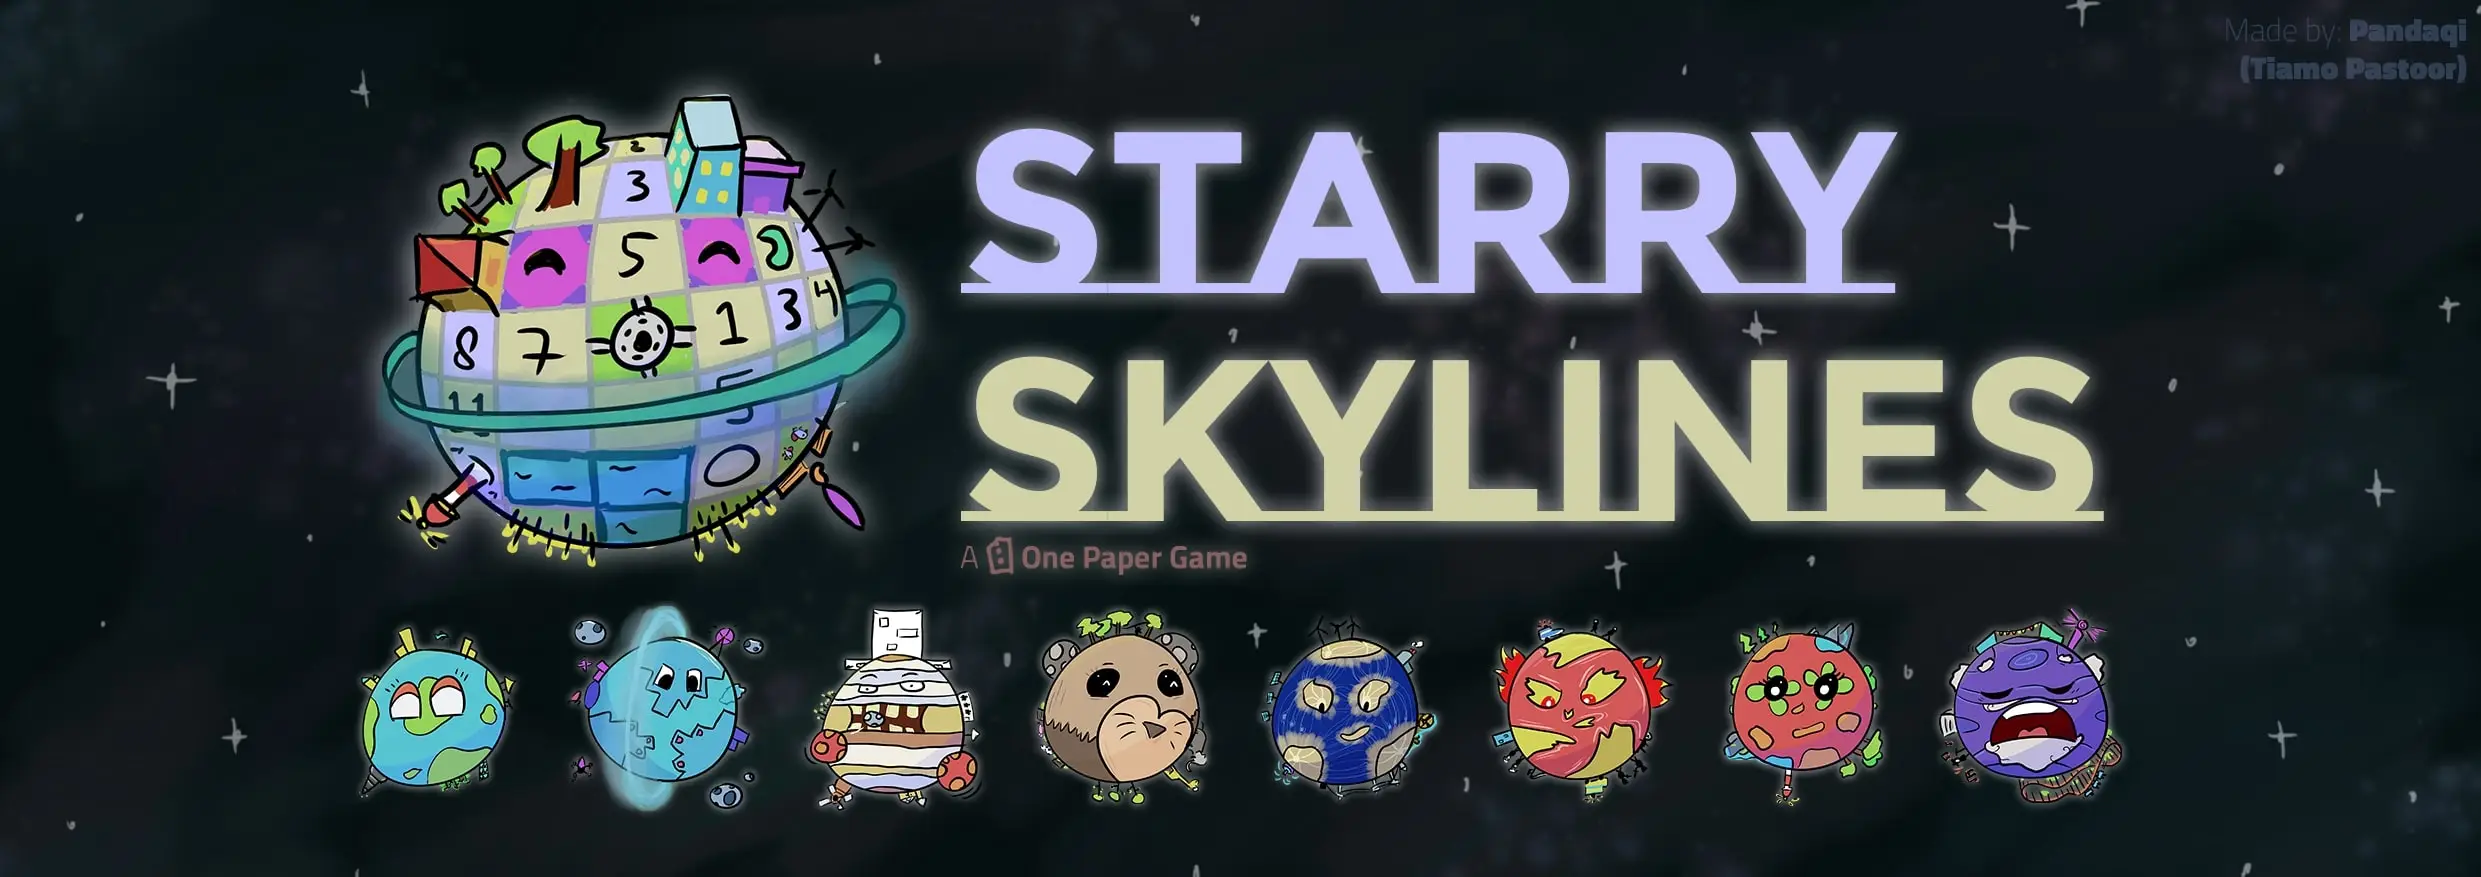 Starryskylines header